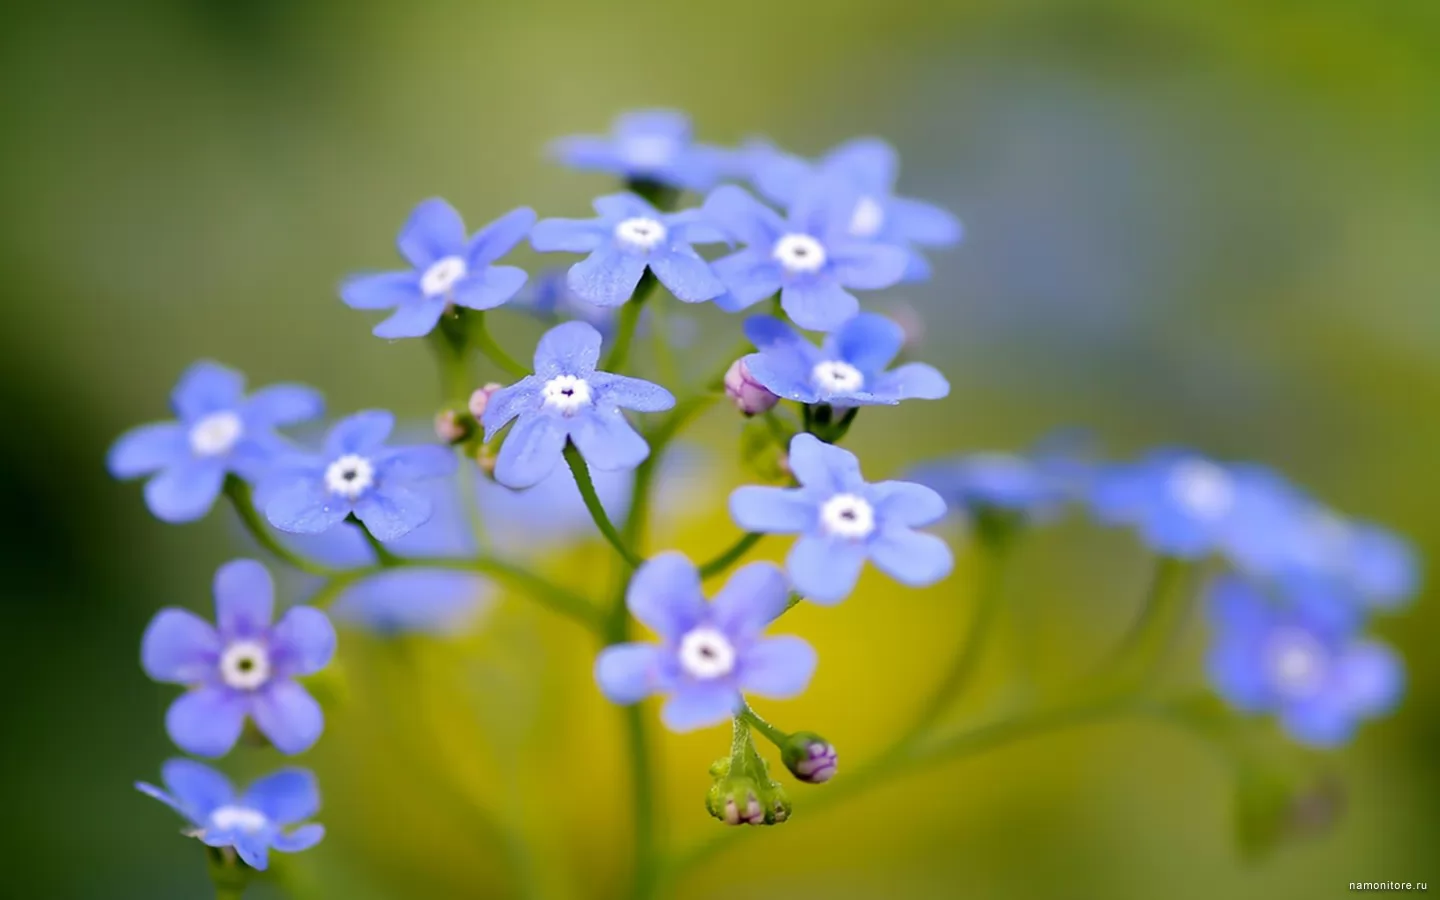 Голубые мелкие цветы, зеленое, лучшее, синее, цветы х